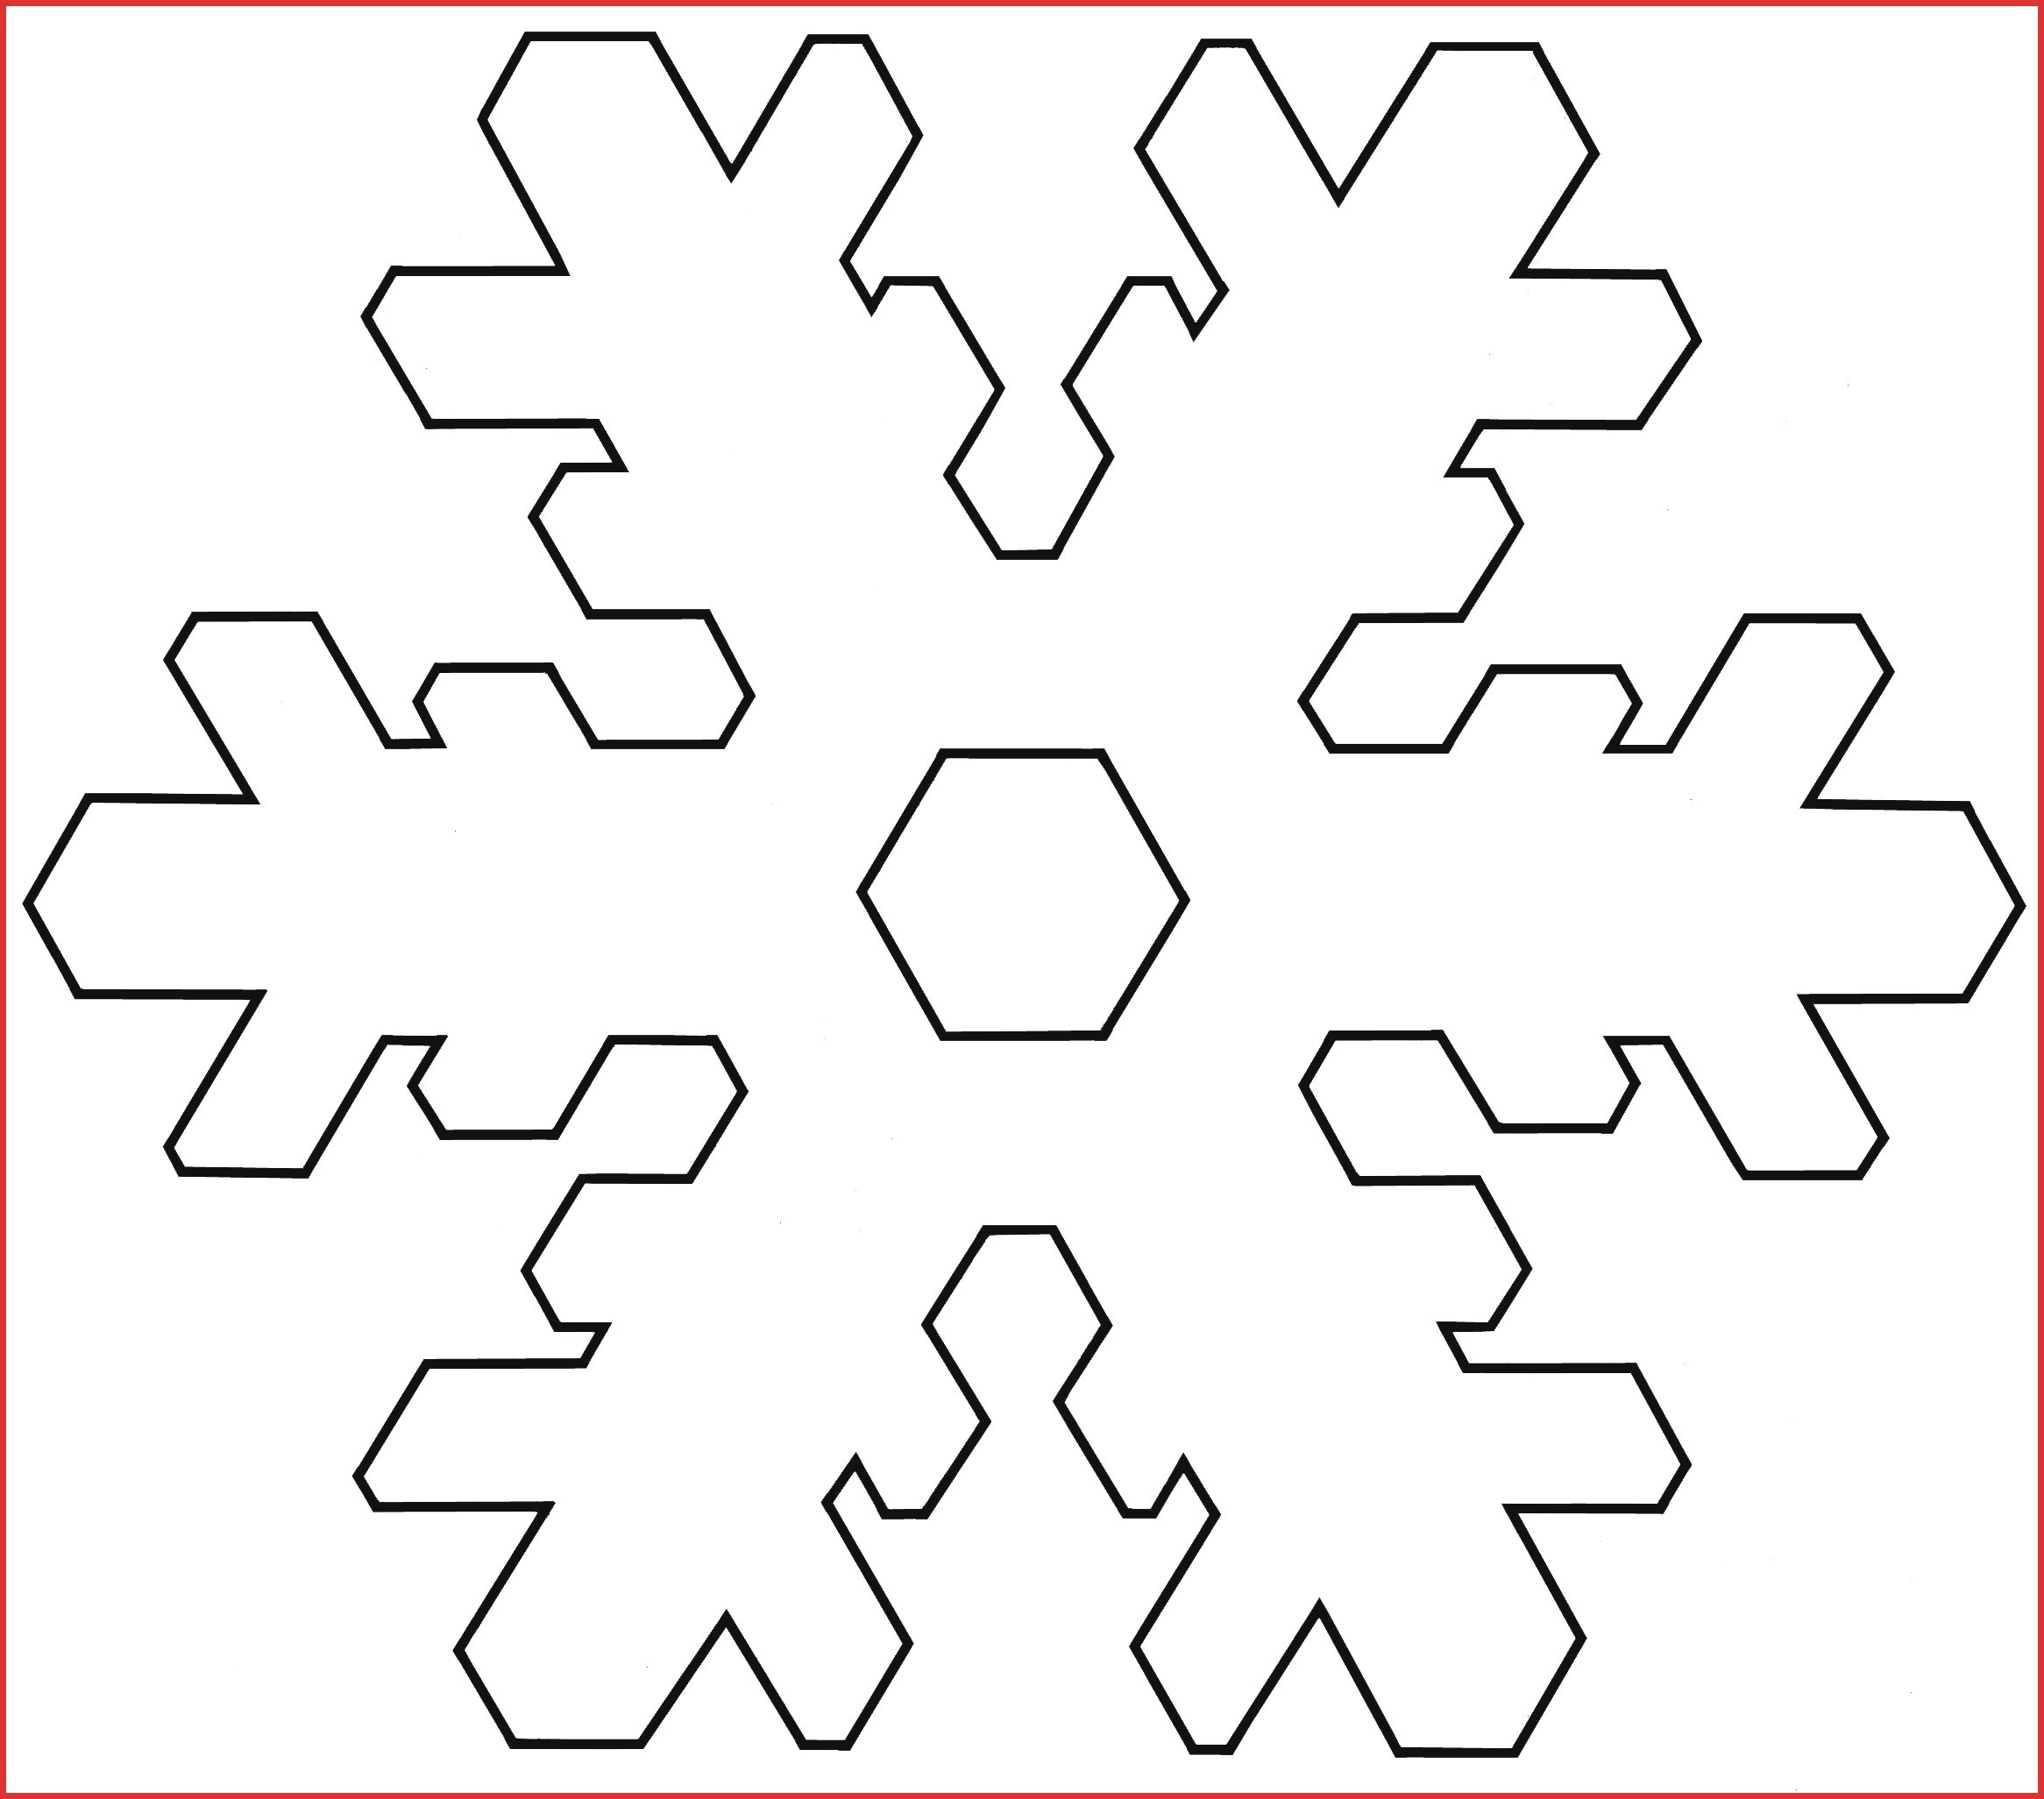 Inspirational Printable Snowflakes | Cobble Usa - Snowflake Template Free Printable